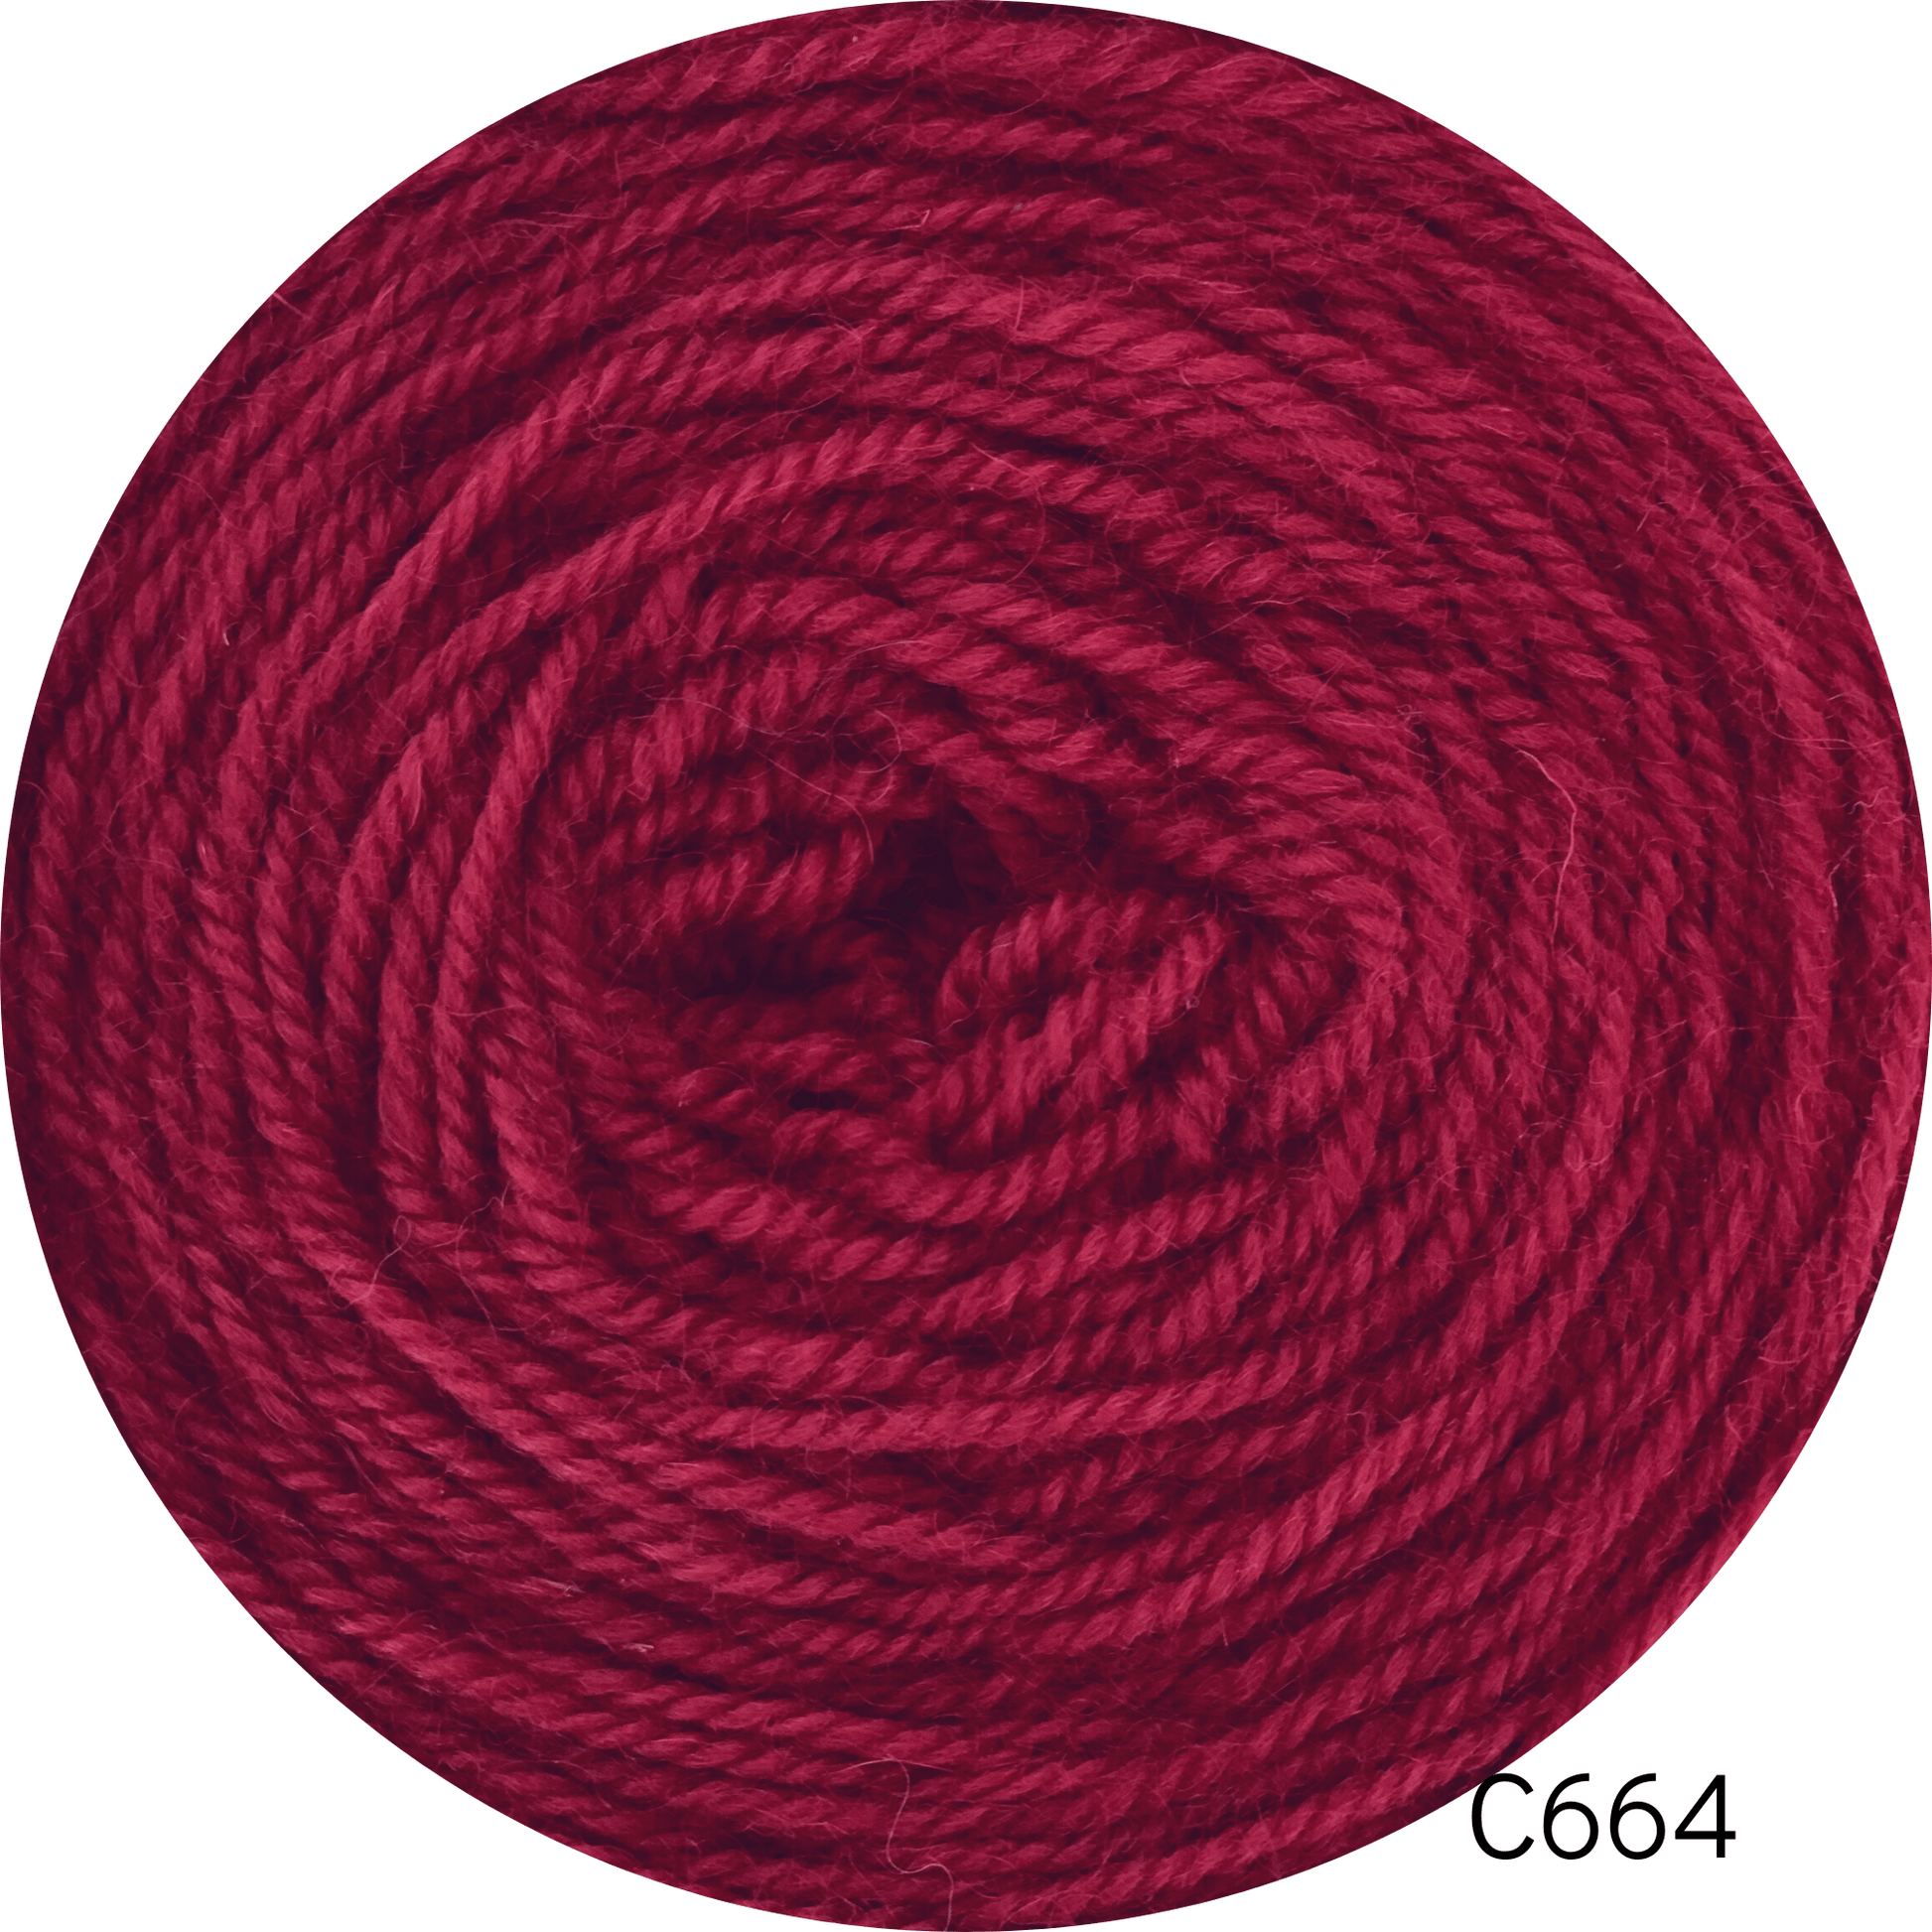 Coromina lana natural 20 grs C664 20GRS Atacama